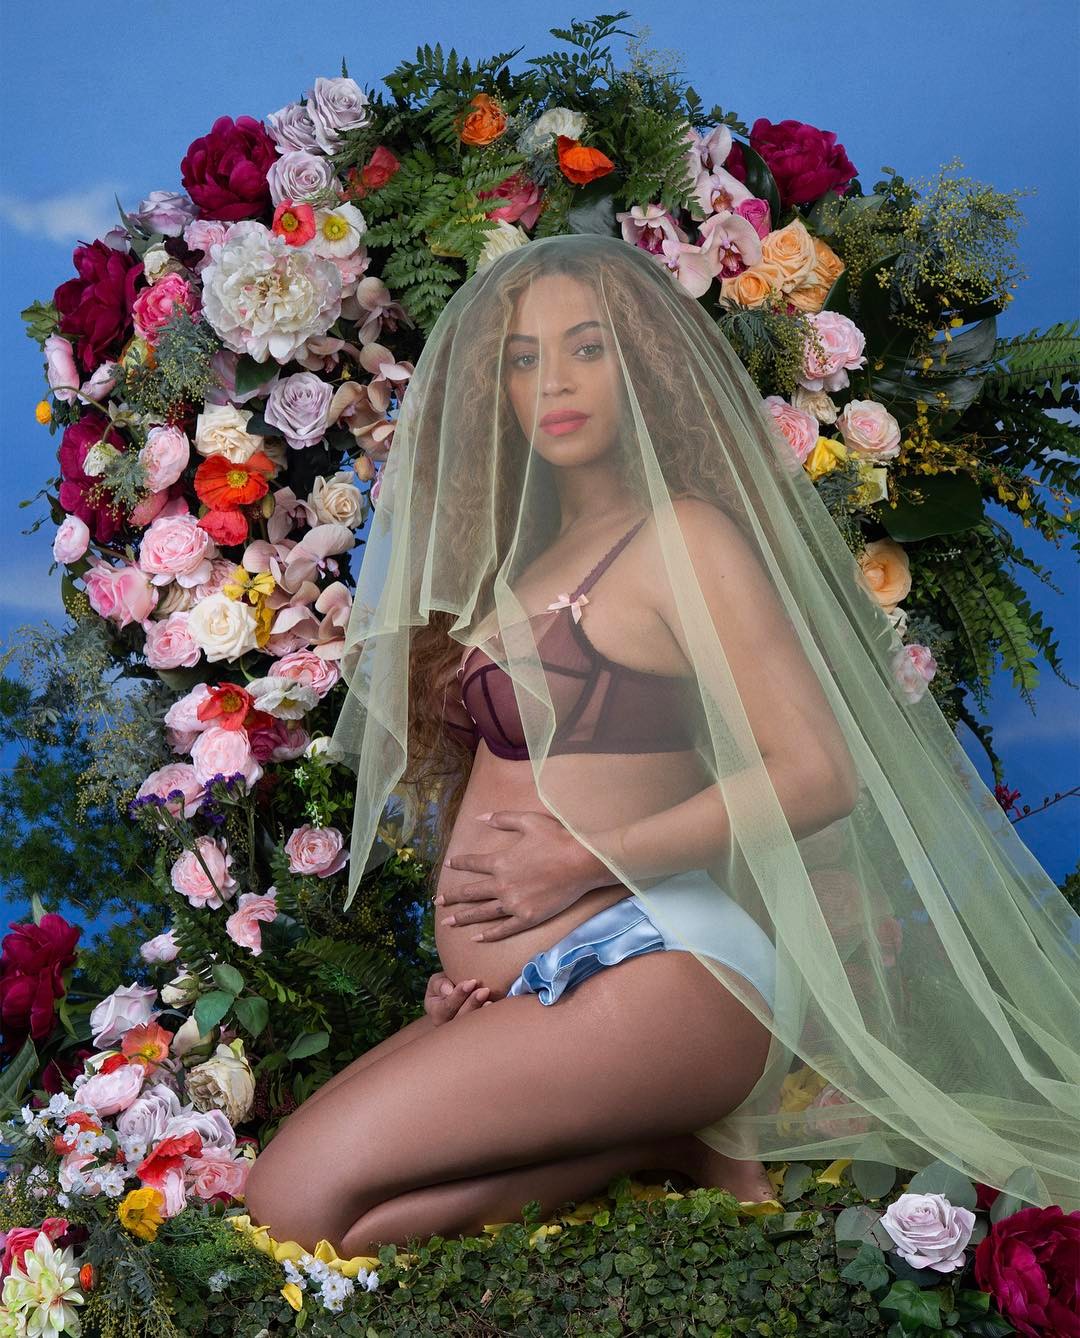 Image Source: Beyoncé Maternity Photos | Photographer: Awol Erizku